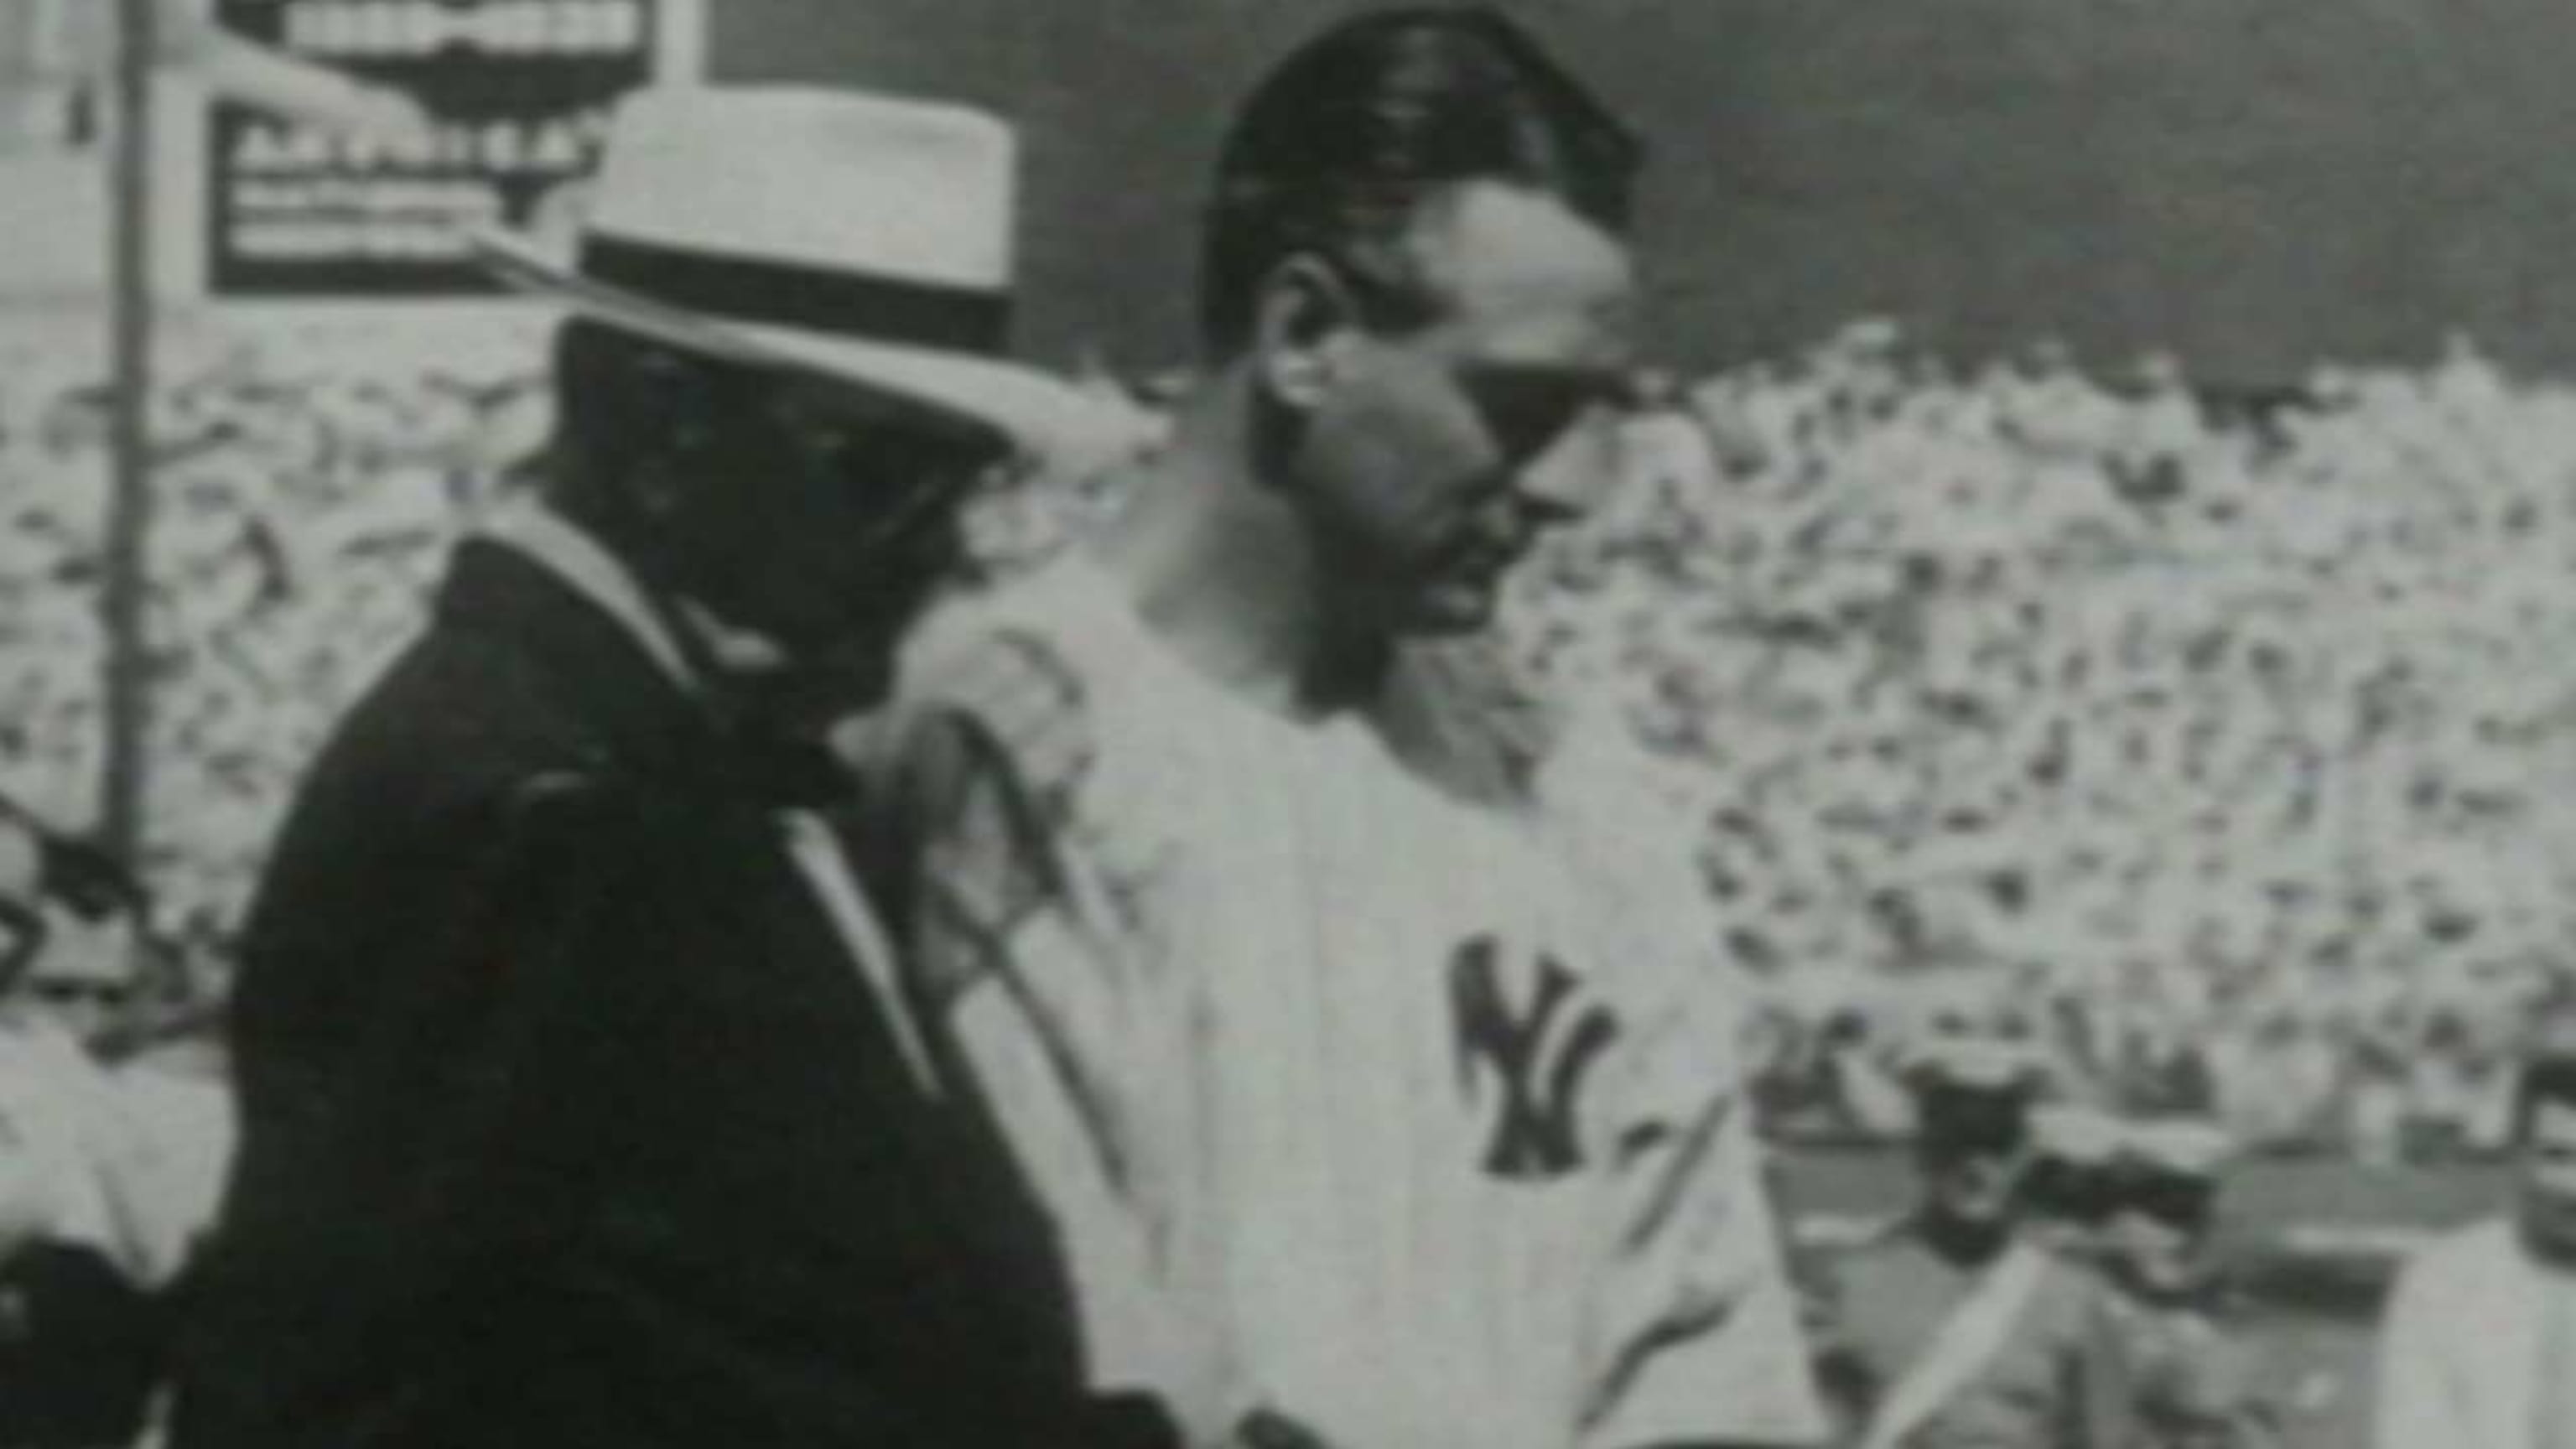 Lou Gehrig's farewell speech